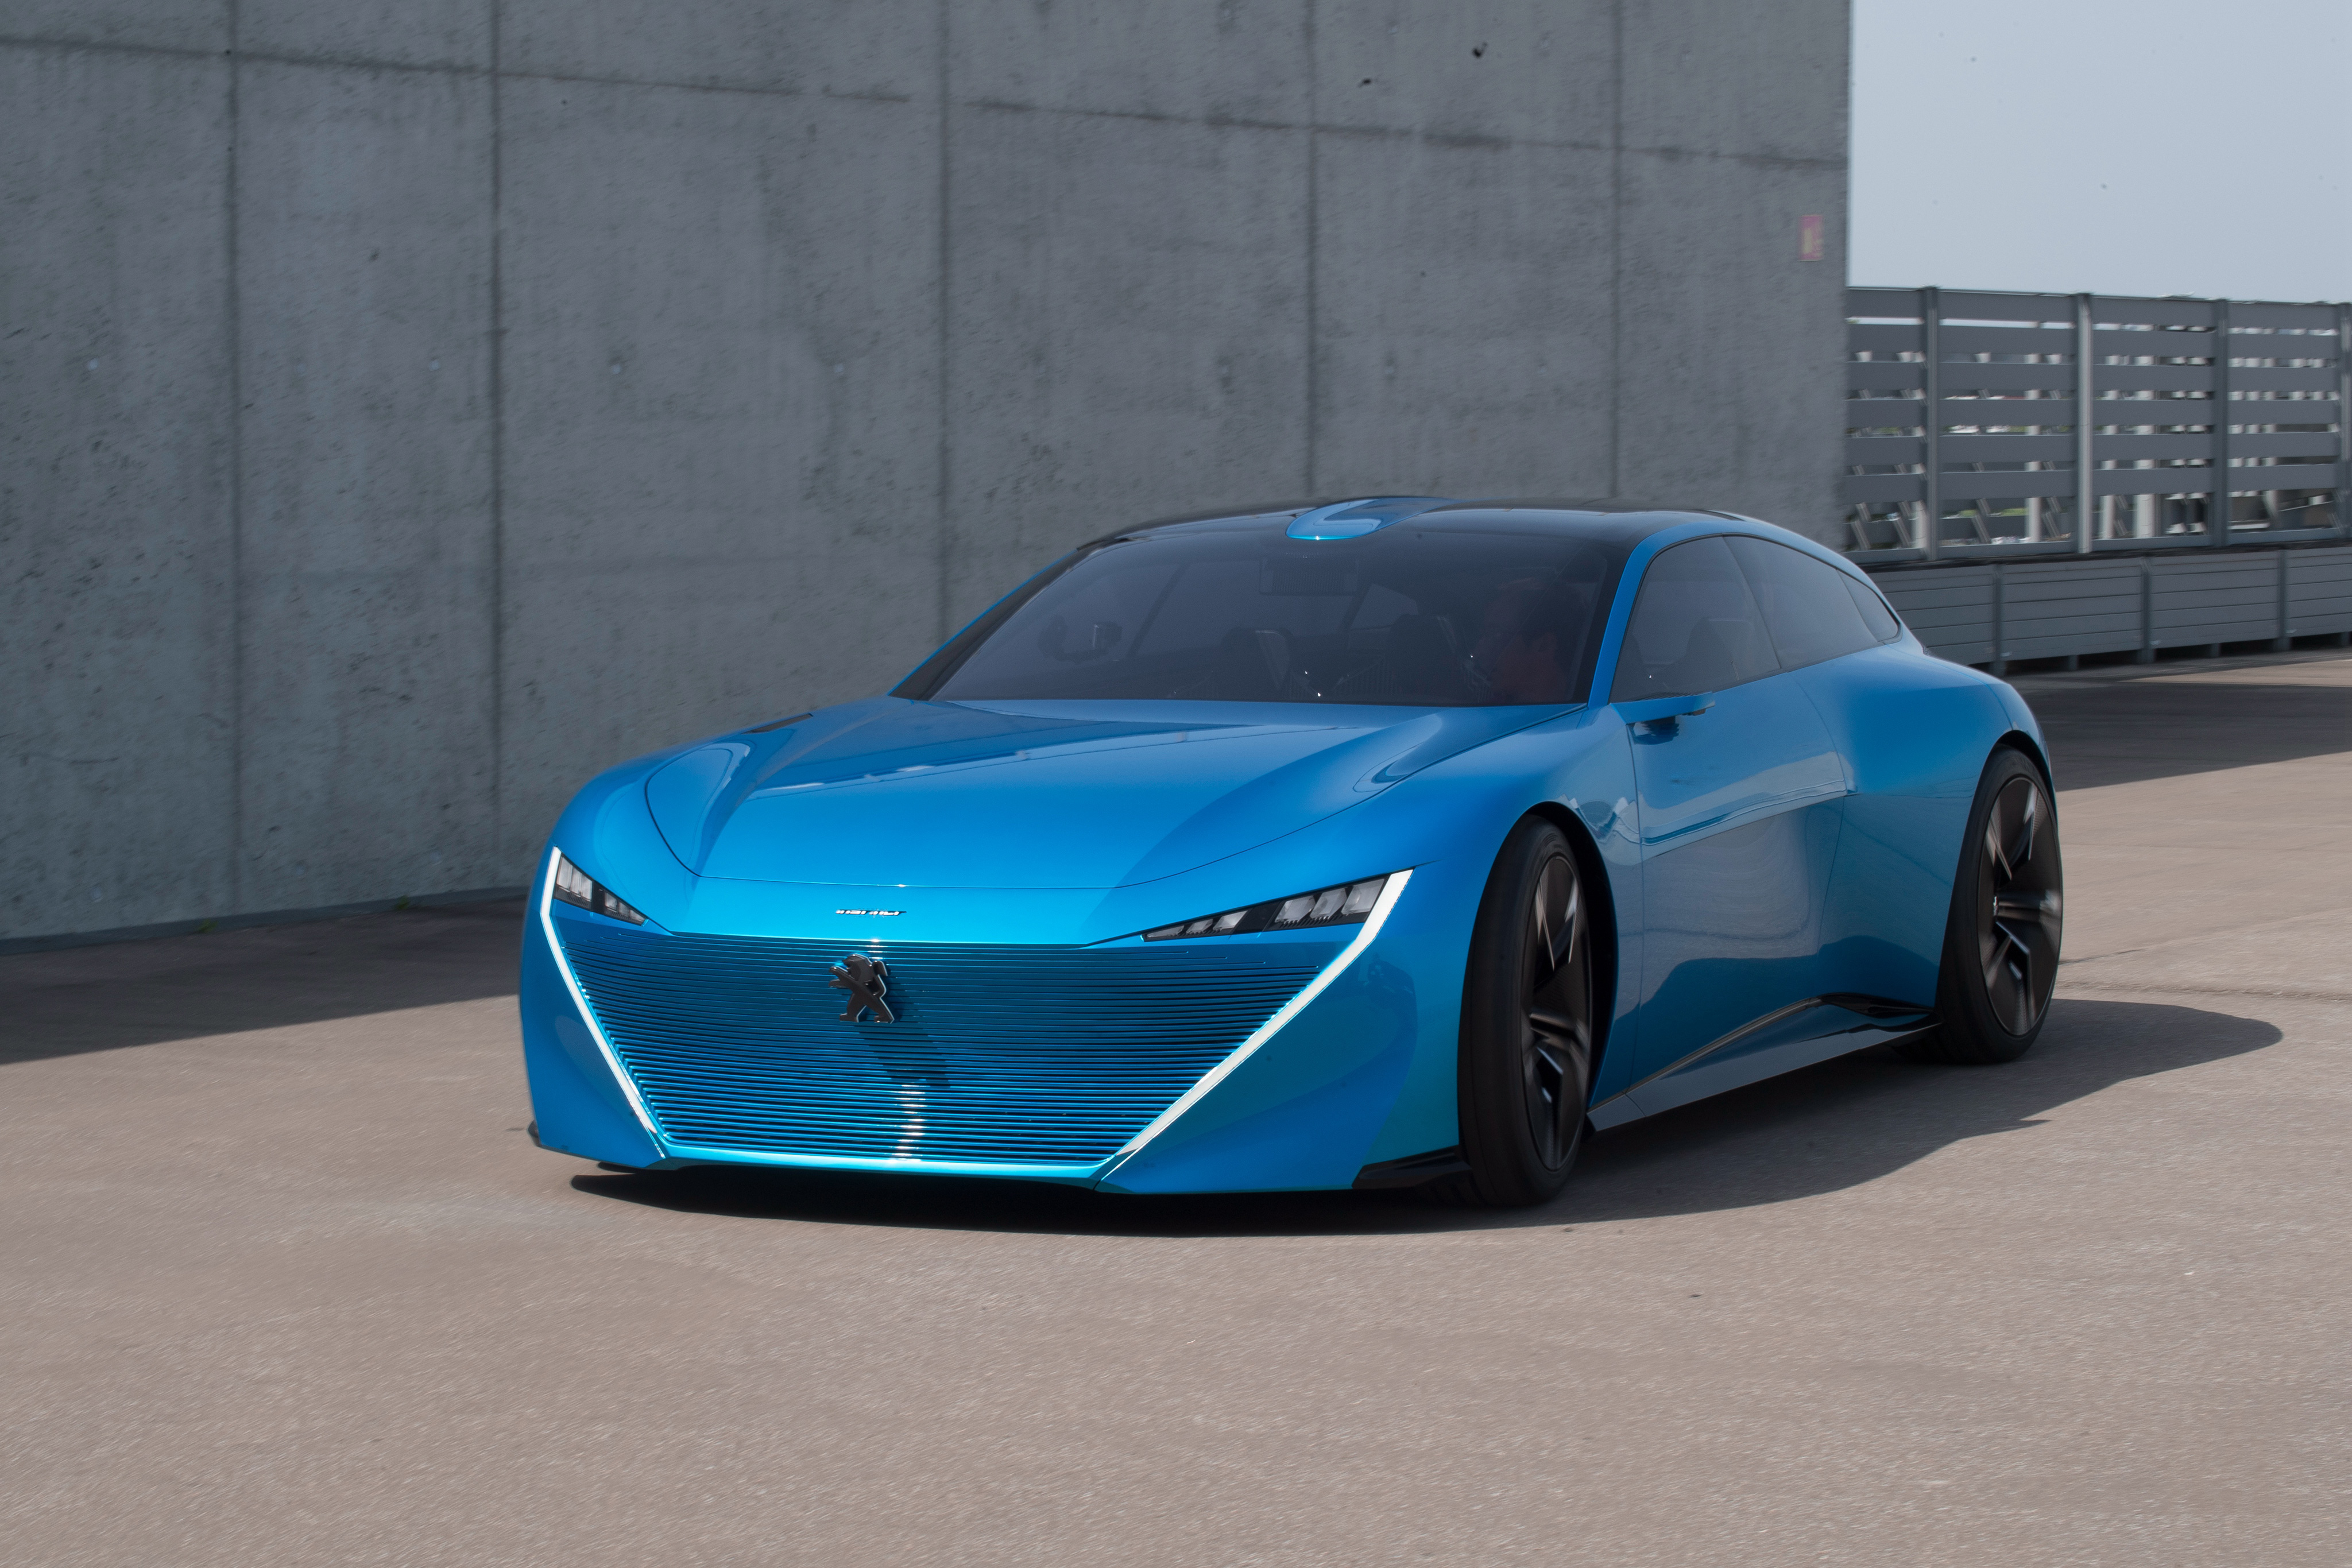 Peugeot Instinct blue concept car